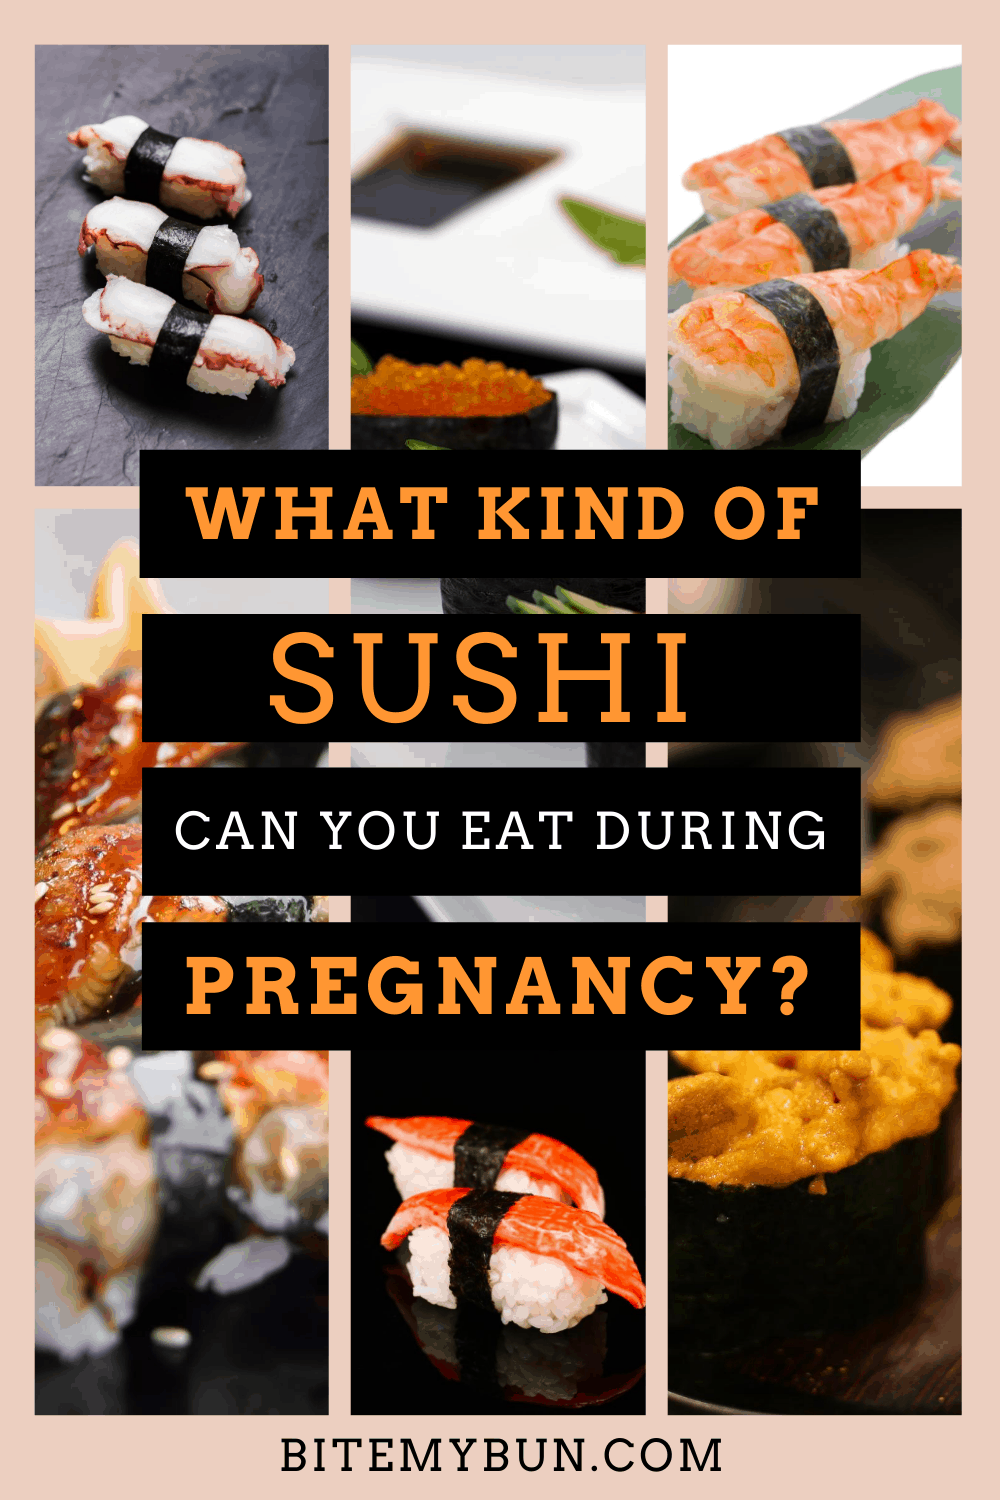 妊娠中の方はどんなお寿司が食べられますか